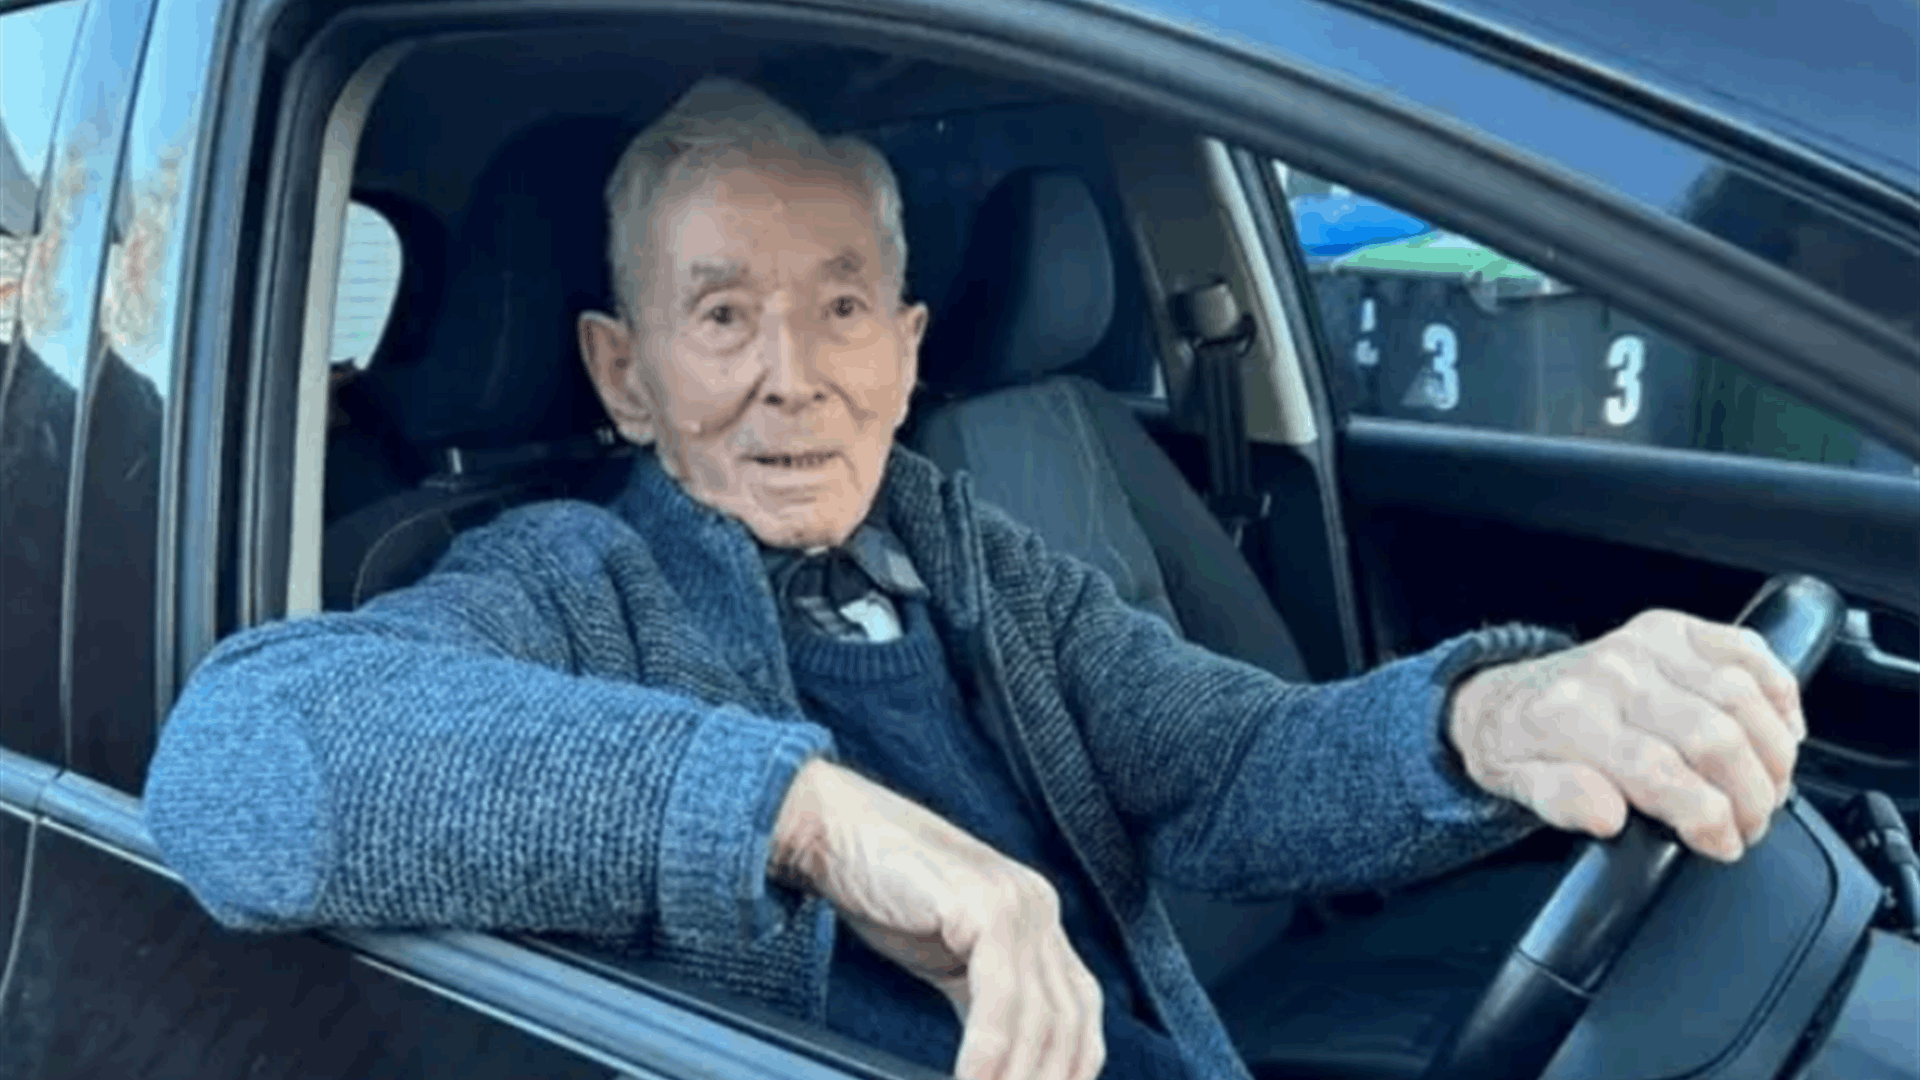 عمره 100 عام وما زال يقود السيارة... وهذه هي الاختبارات التي تجاوزها!